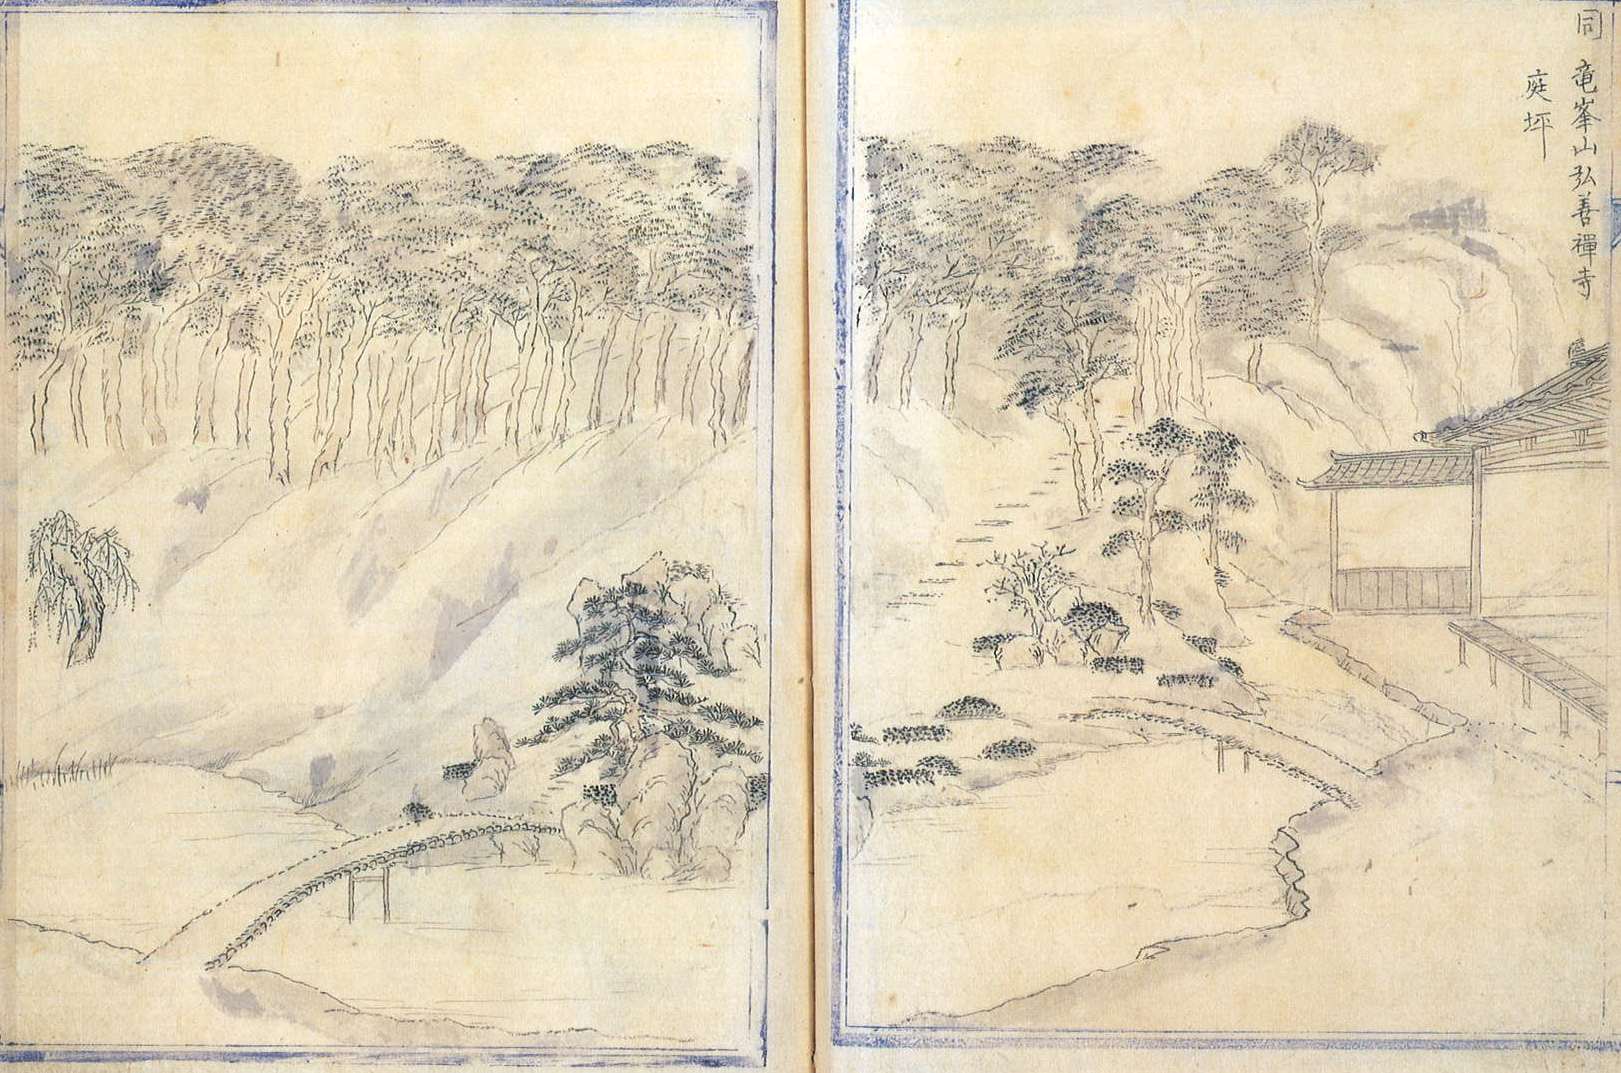 興禅寺's image 1